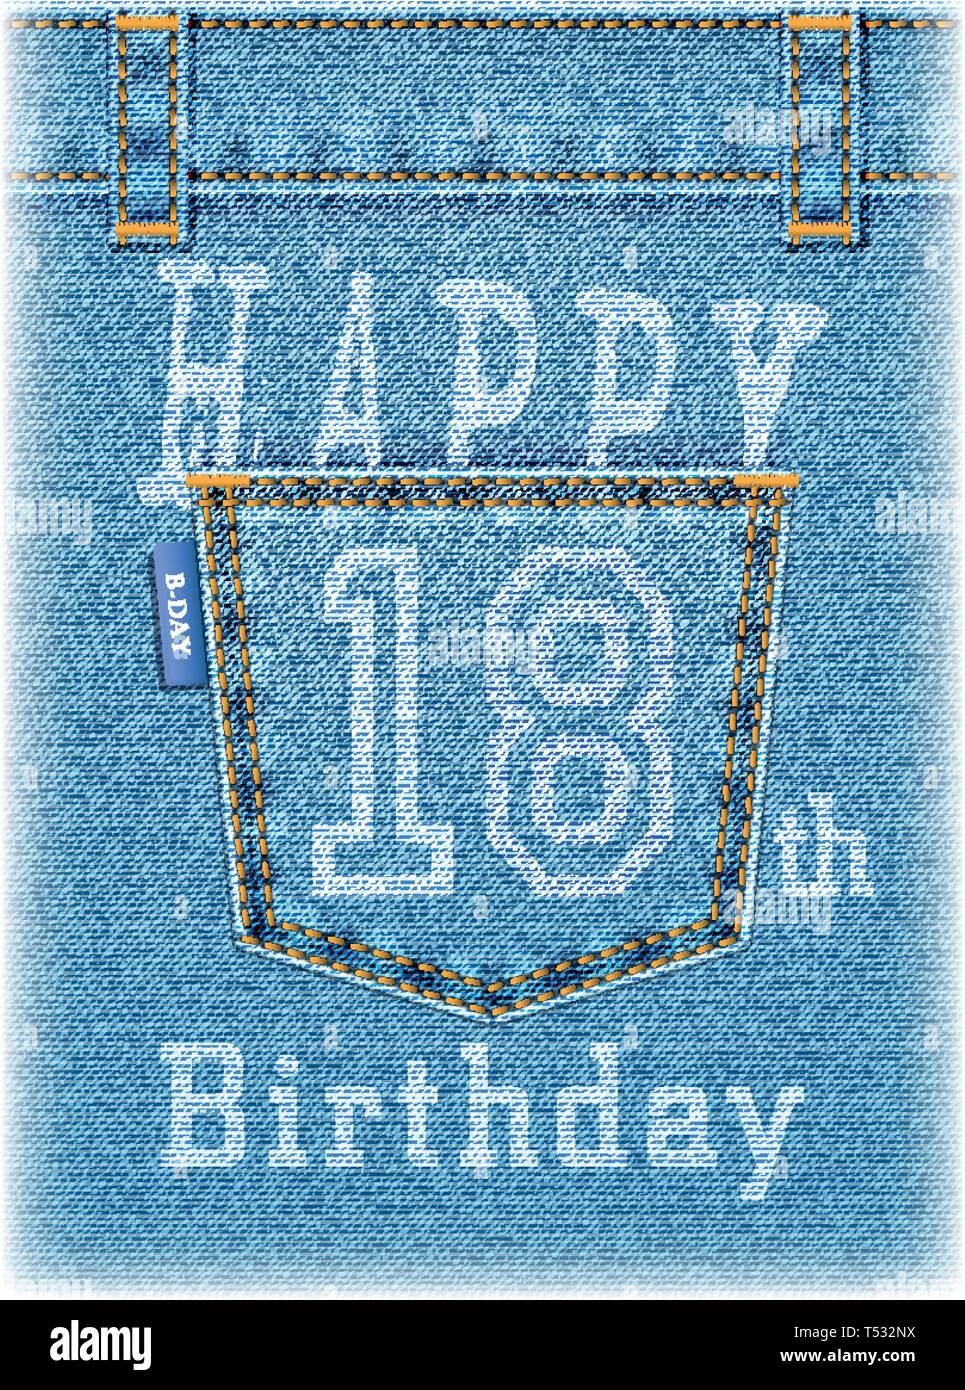 Happy Birthday Jean Card Balloon Text Stock Illustration 514066795   Shutterstock